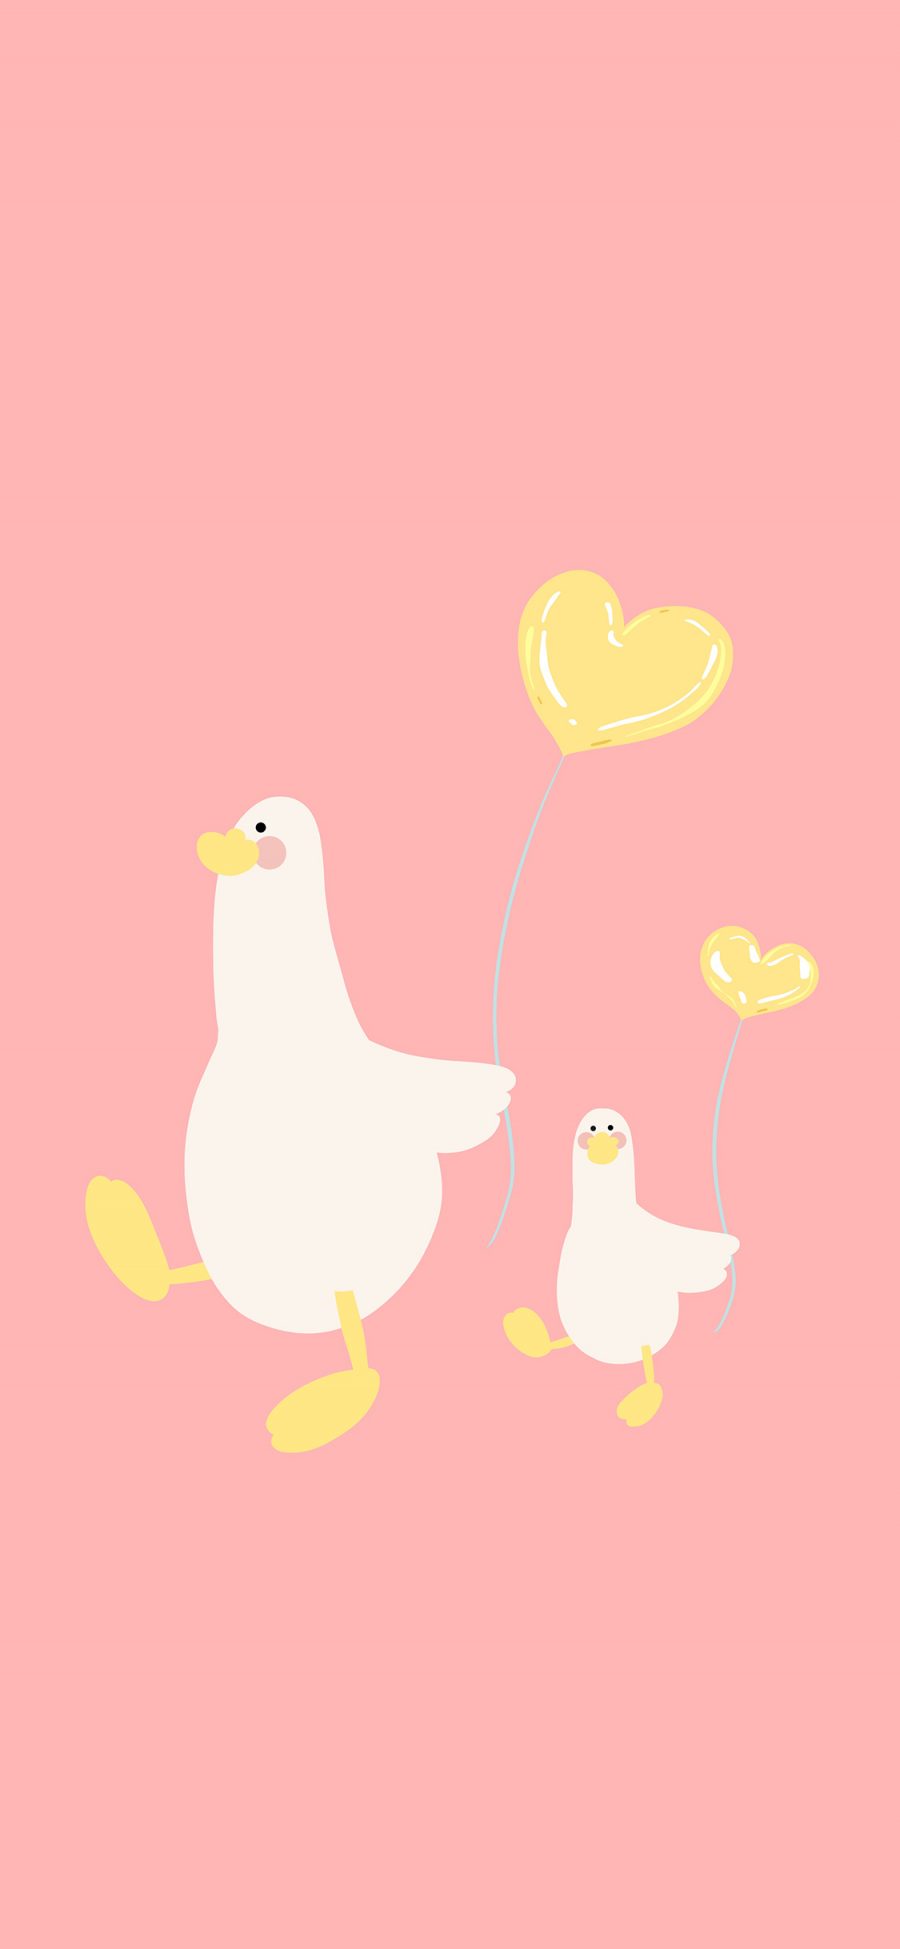 [2436×1125]鸭子 气球 粉色 卡通 行走 爱心 心形 苹果手机动漫壁纸图片